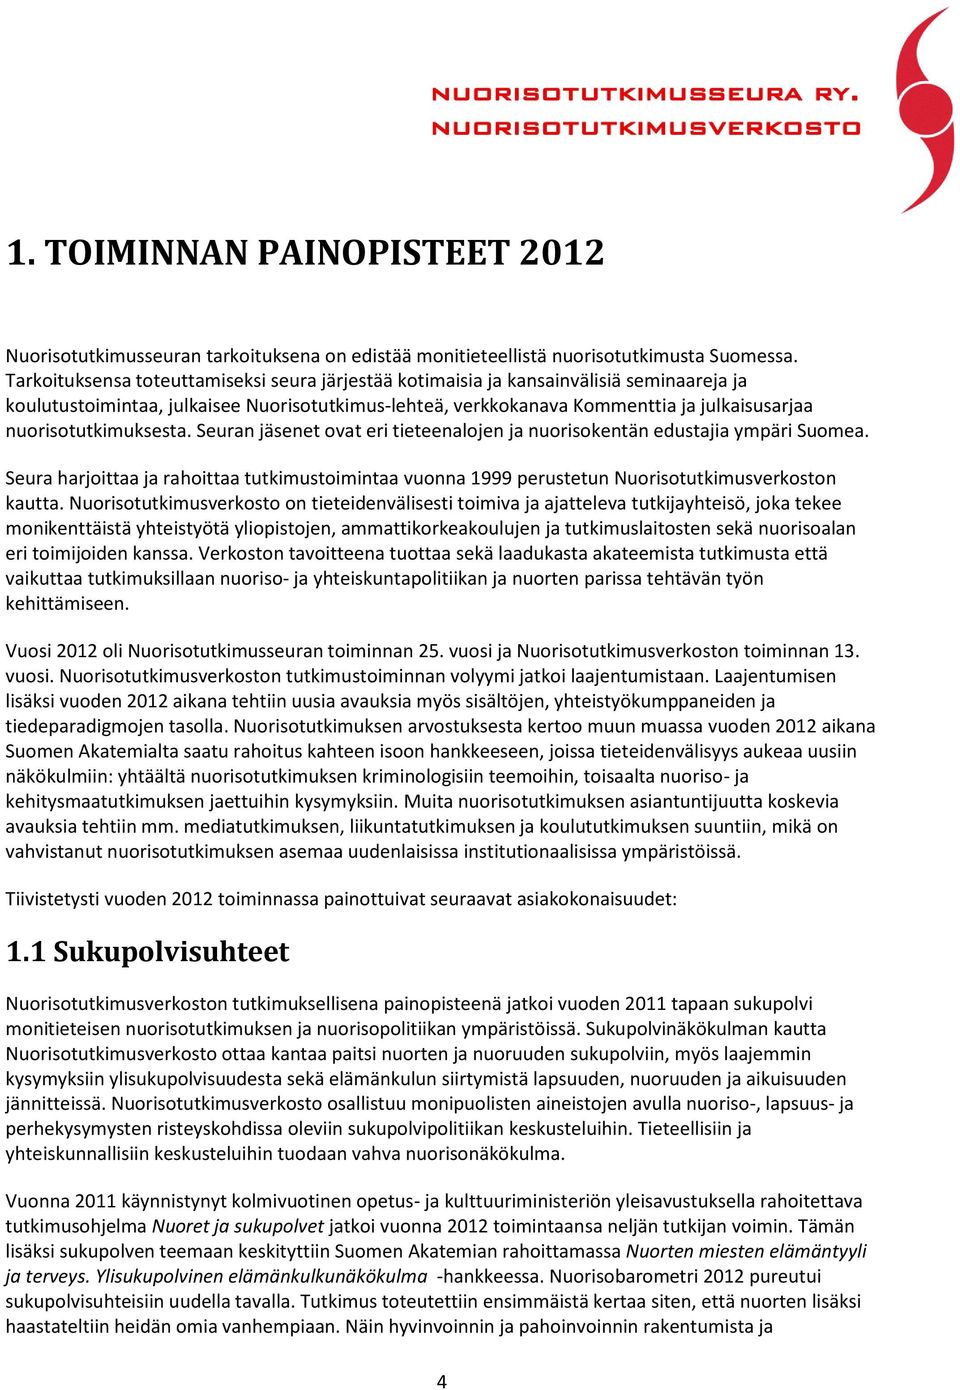 nuorisotutkimuksesta. Seuran jäsenet ovat eri tieteenalojen ja nuorisokentän edustajia ympäri Suomea.